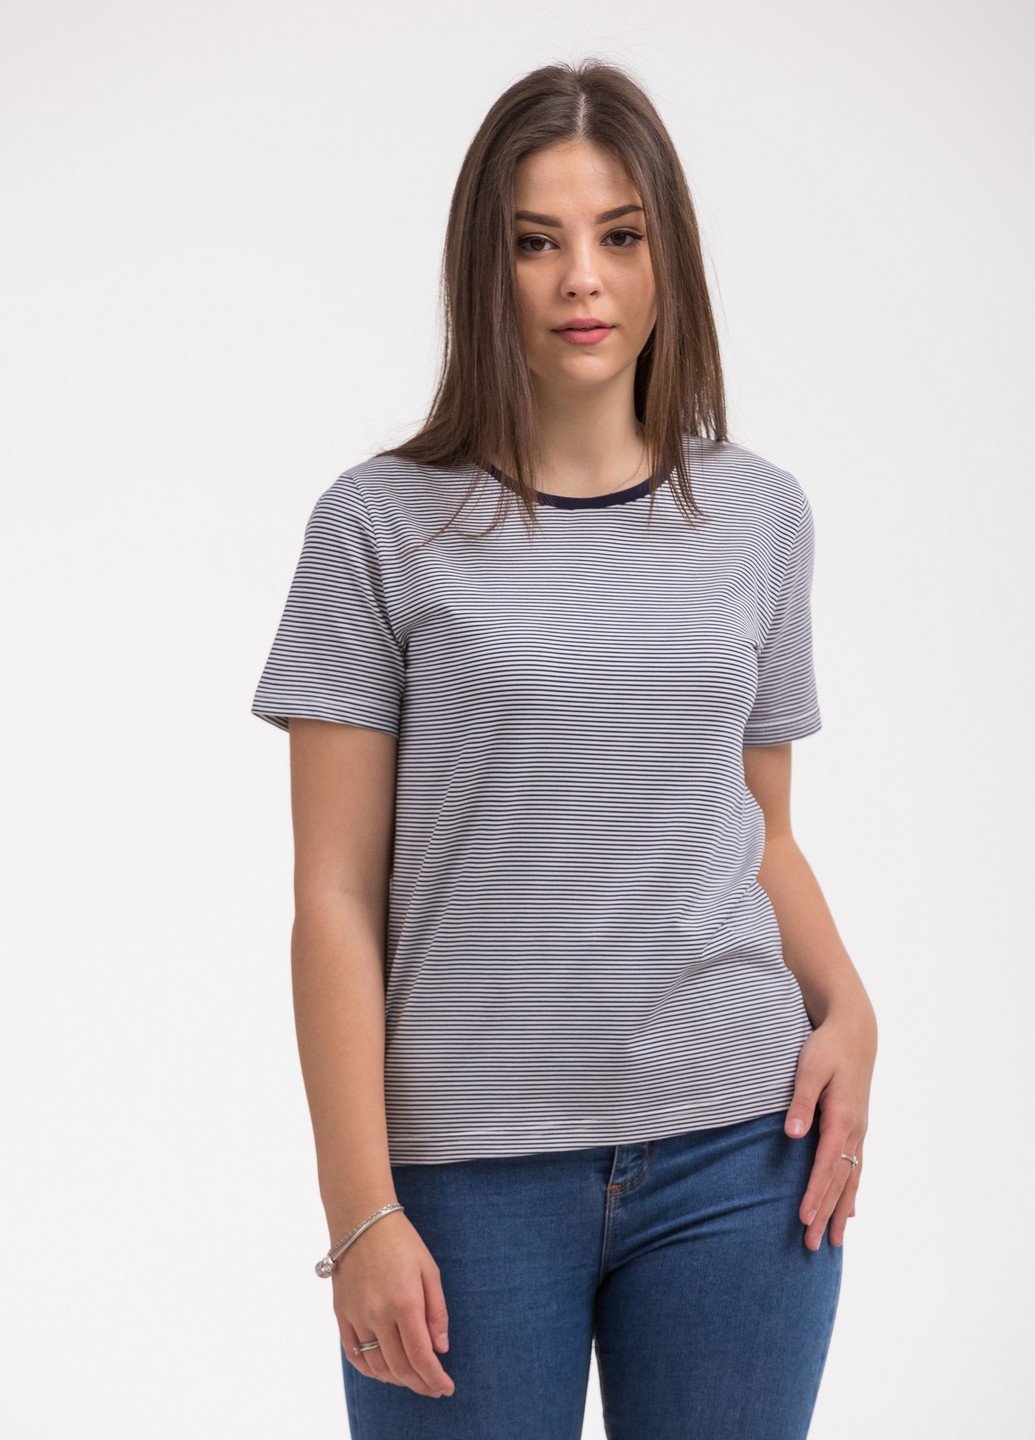 футболка женская 41-2362 полоска узкая 2